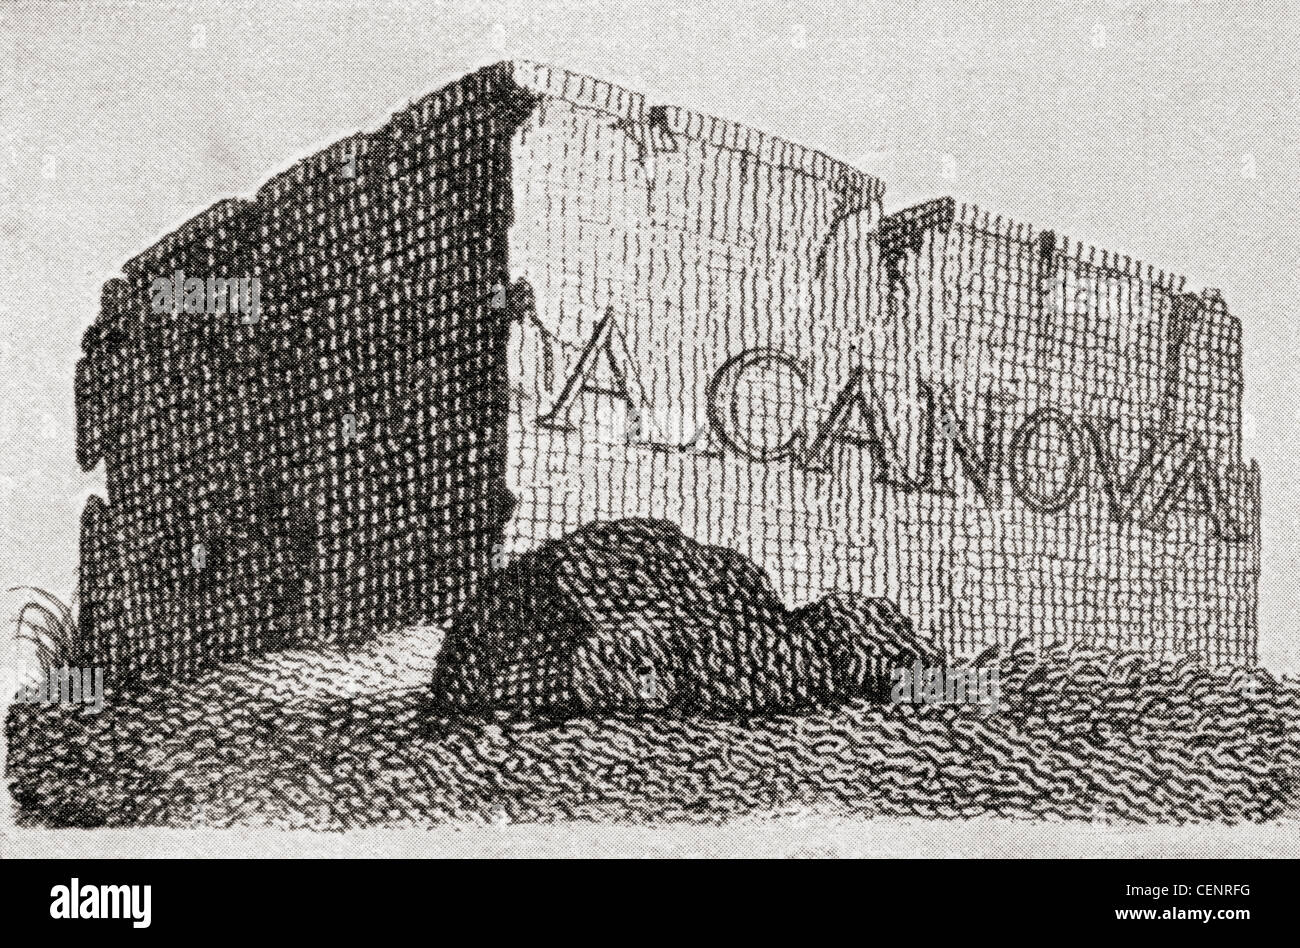 La tarjeta de visita de Antonio Canova, representando un enorme bloque de mármol. Antonio Canova, 1757 - 1822. Escultor italiano. Foto de stock